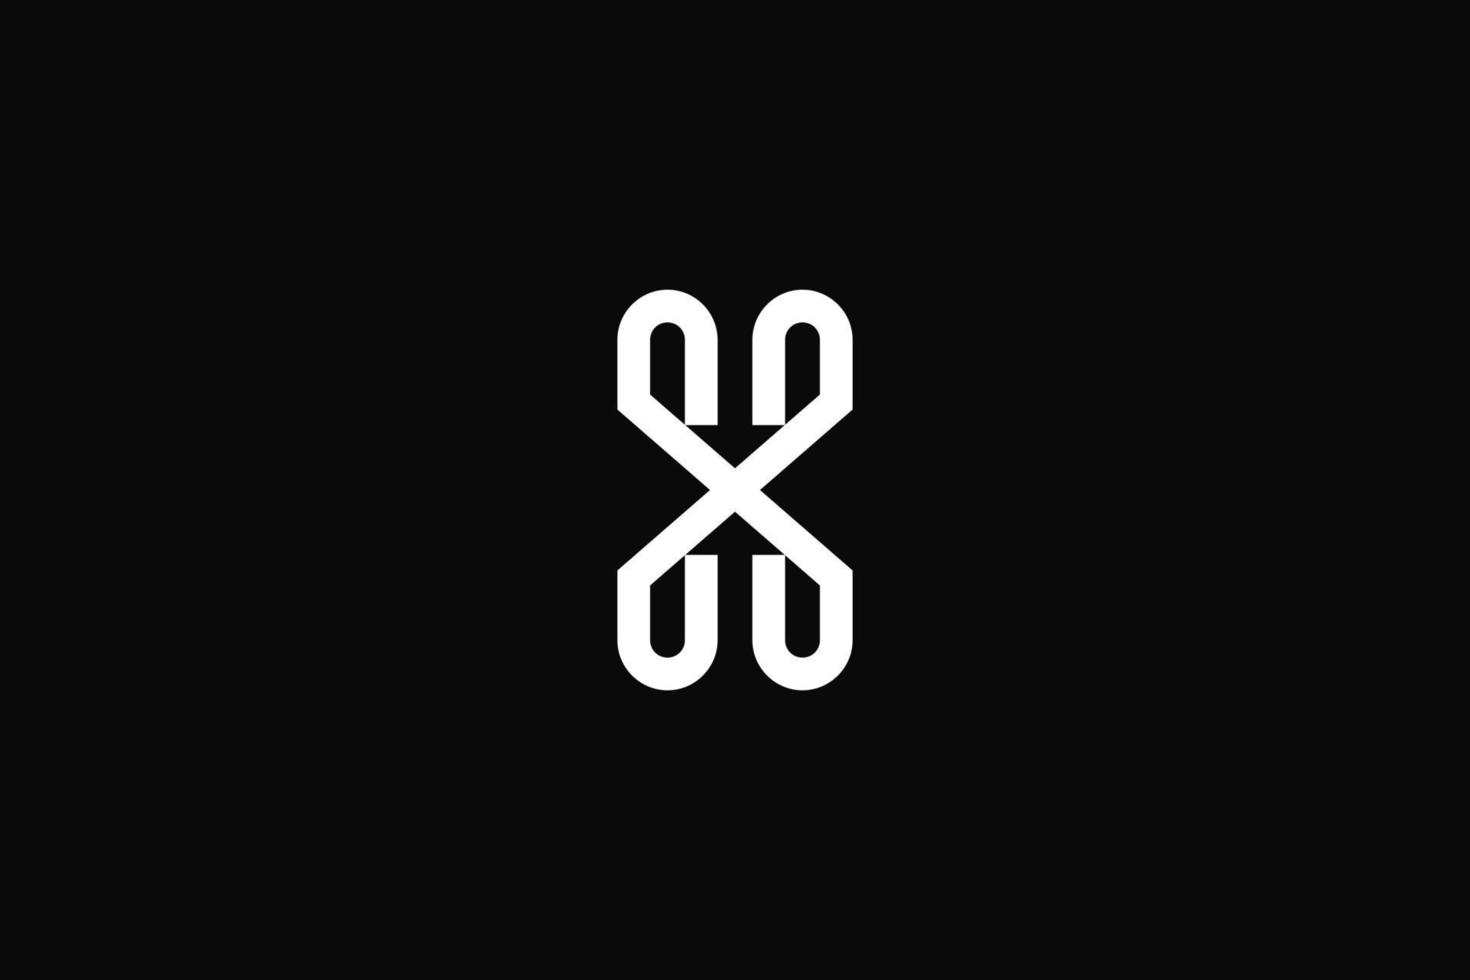 letra h o x o logotipo de flecha hx. diseño vectorial vector